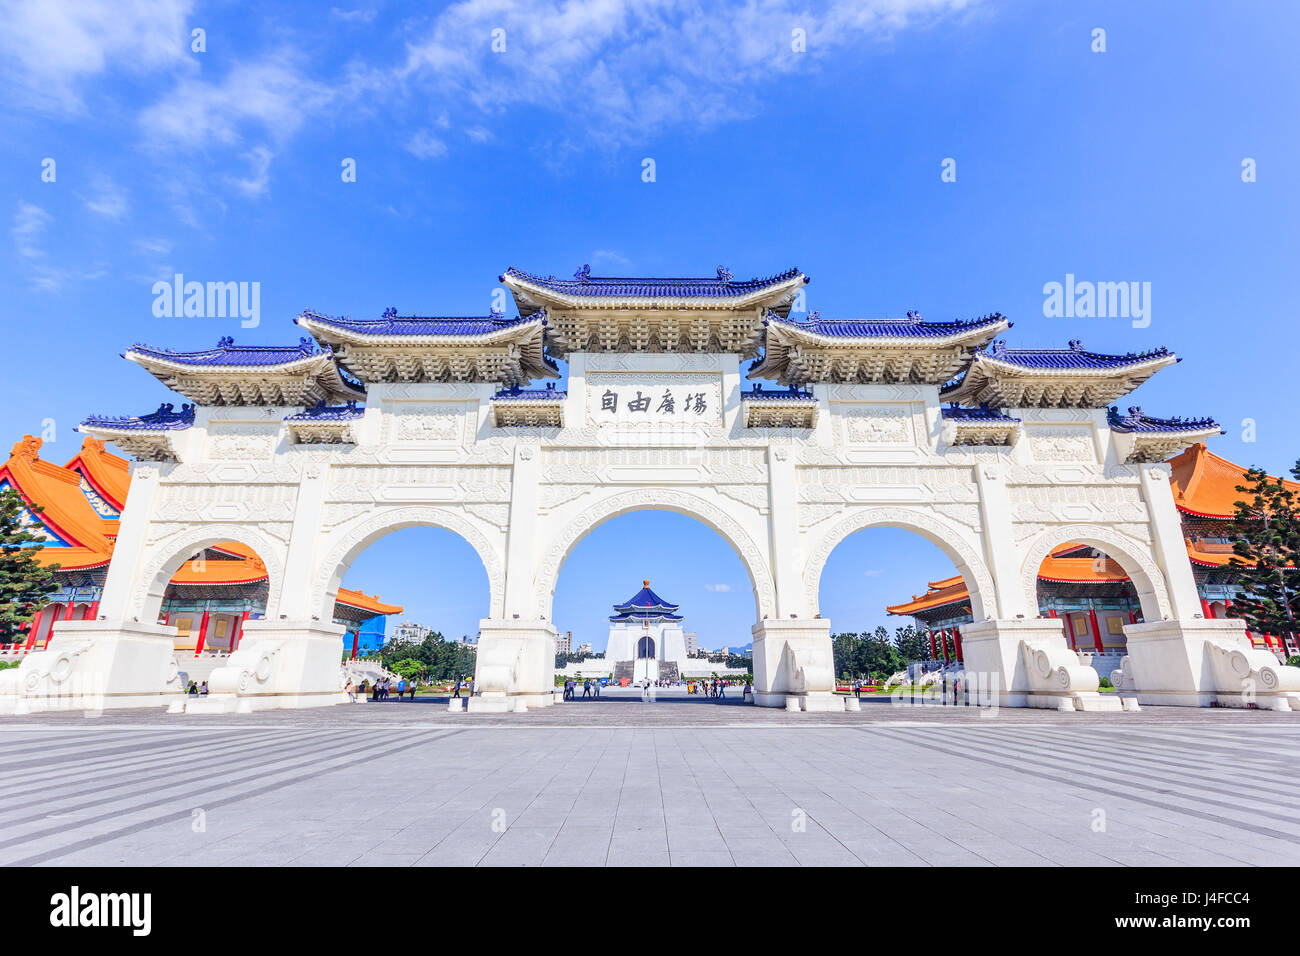 Torbogen von Chiang Kai Shek Memorial Hall, Tapiei, Taiwan. Die Bedeutung des chinesischen Textes auf den Torbogen ist "Platz der Freiheit". Stockfoto